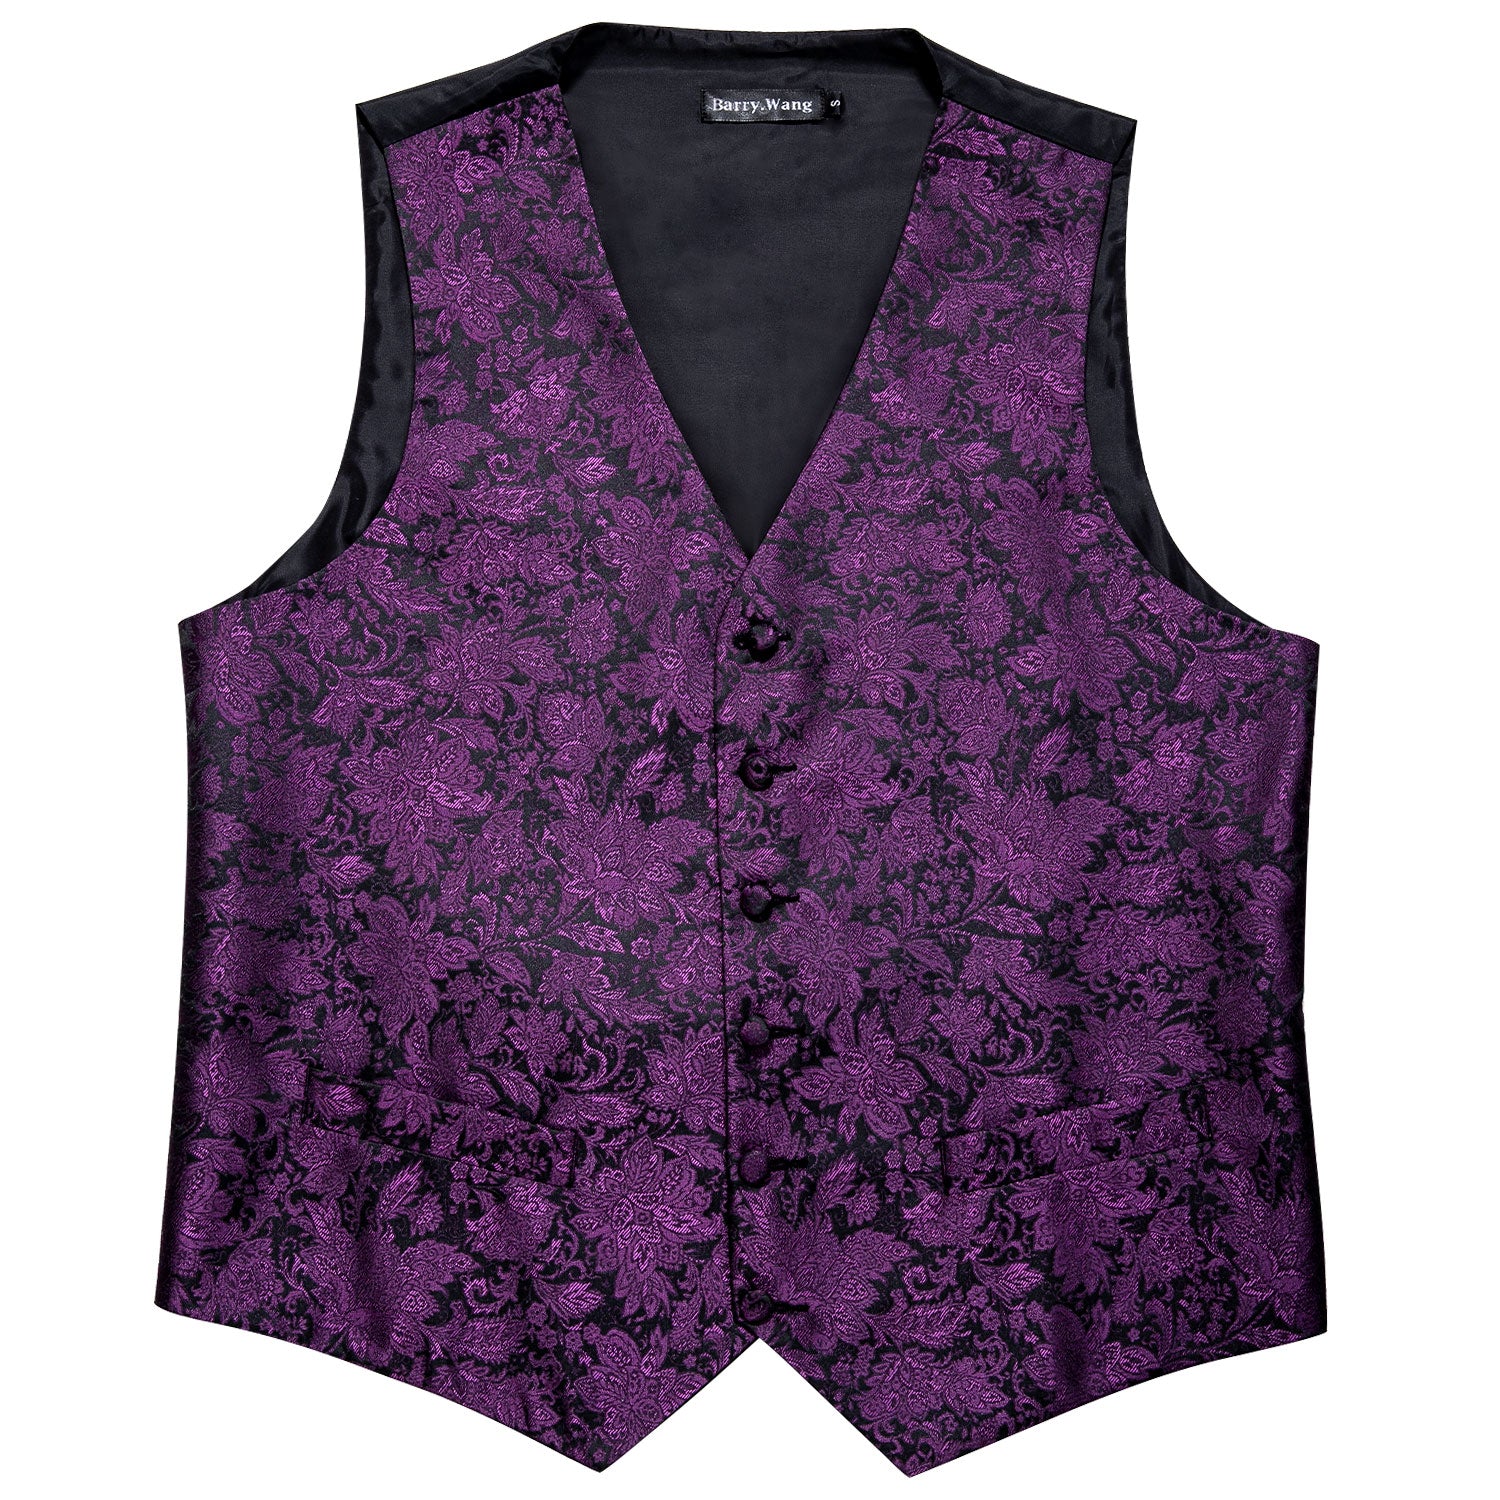 Barry Wang purple vest Men's Purple Floral Silk Vest Necktie Set for Men